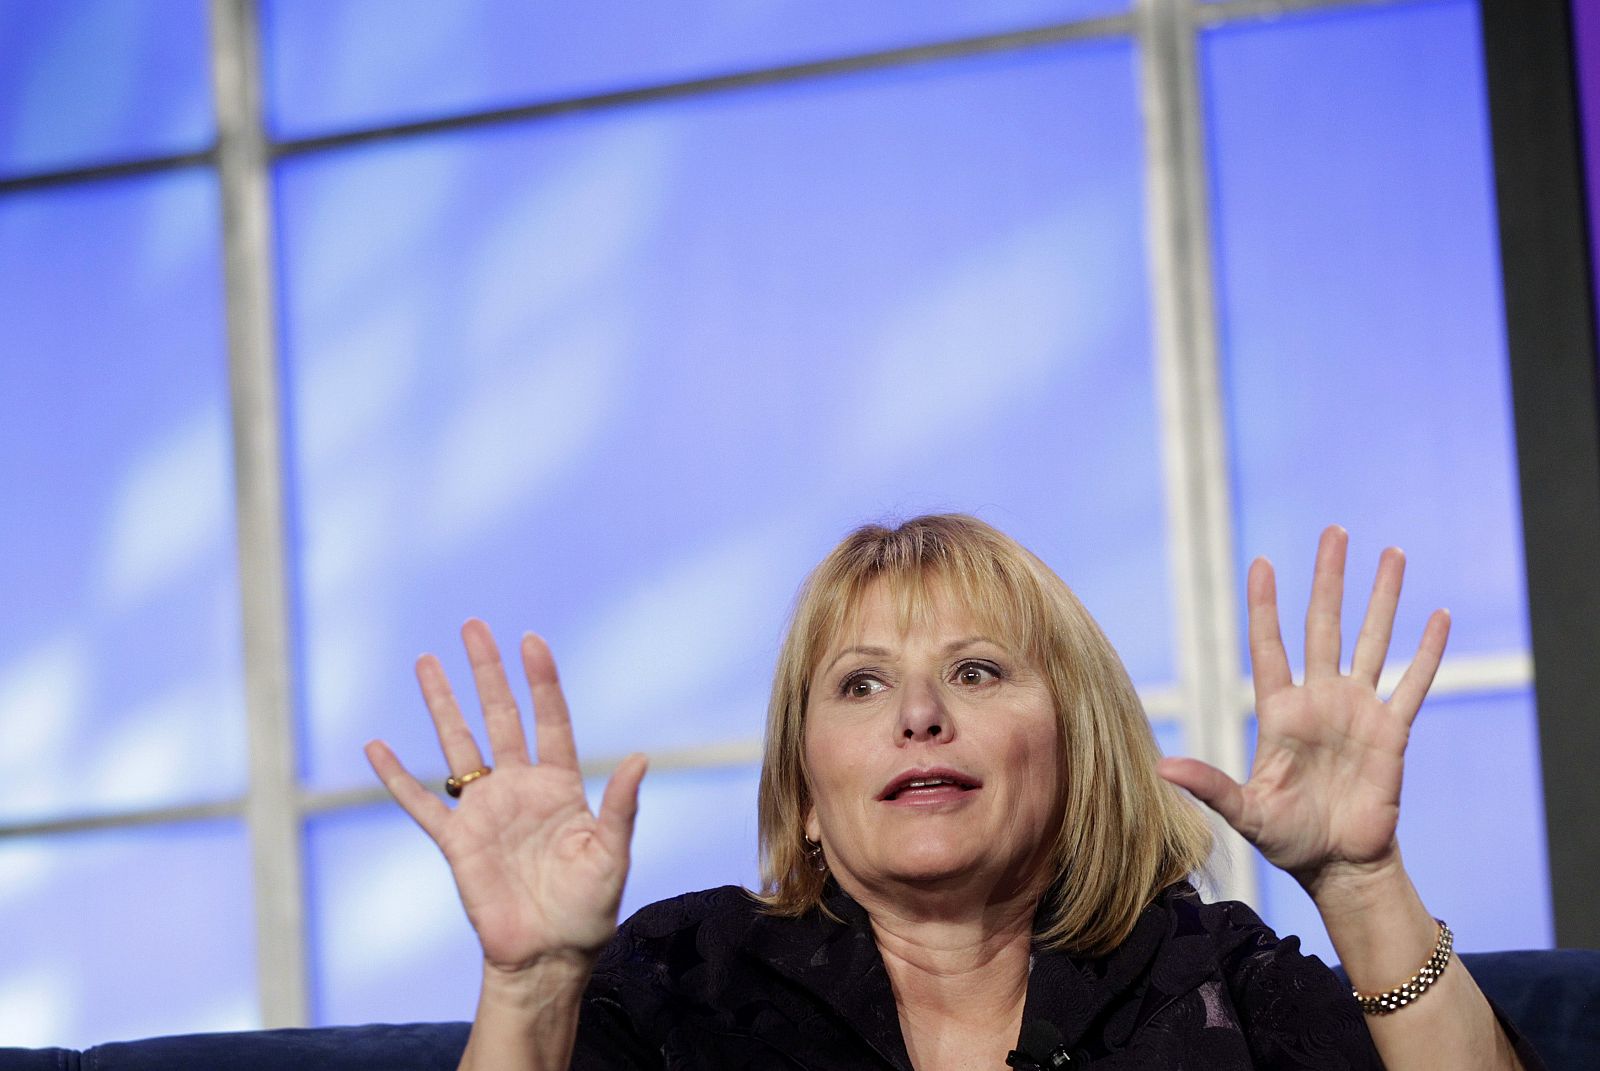 La consejera delegada de Yahoo, Carol Bartz, durante una conferencia en 2010 en California. Ha sido despedida recientemente por el presidente del consejo de administración debido al «estancamiento» de la compañía.